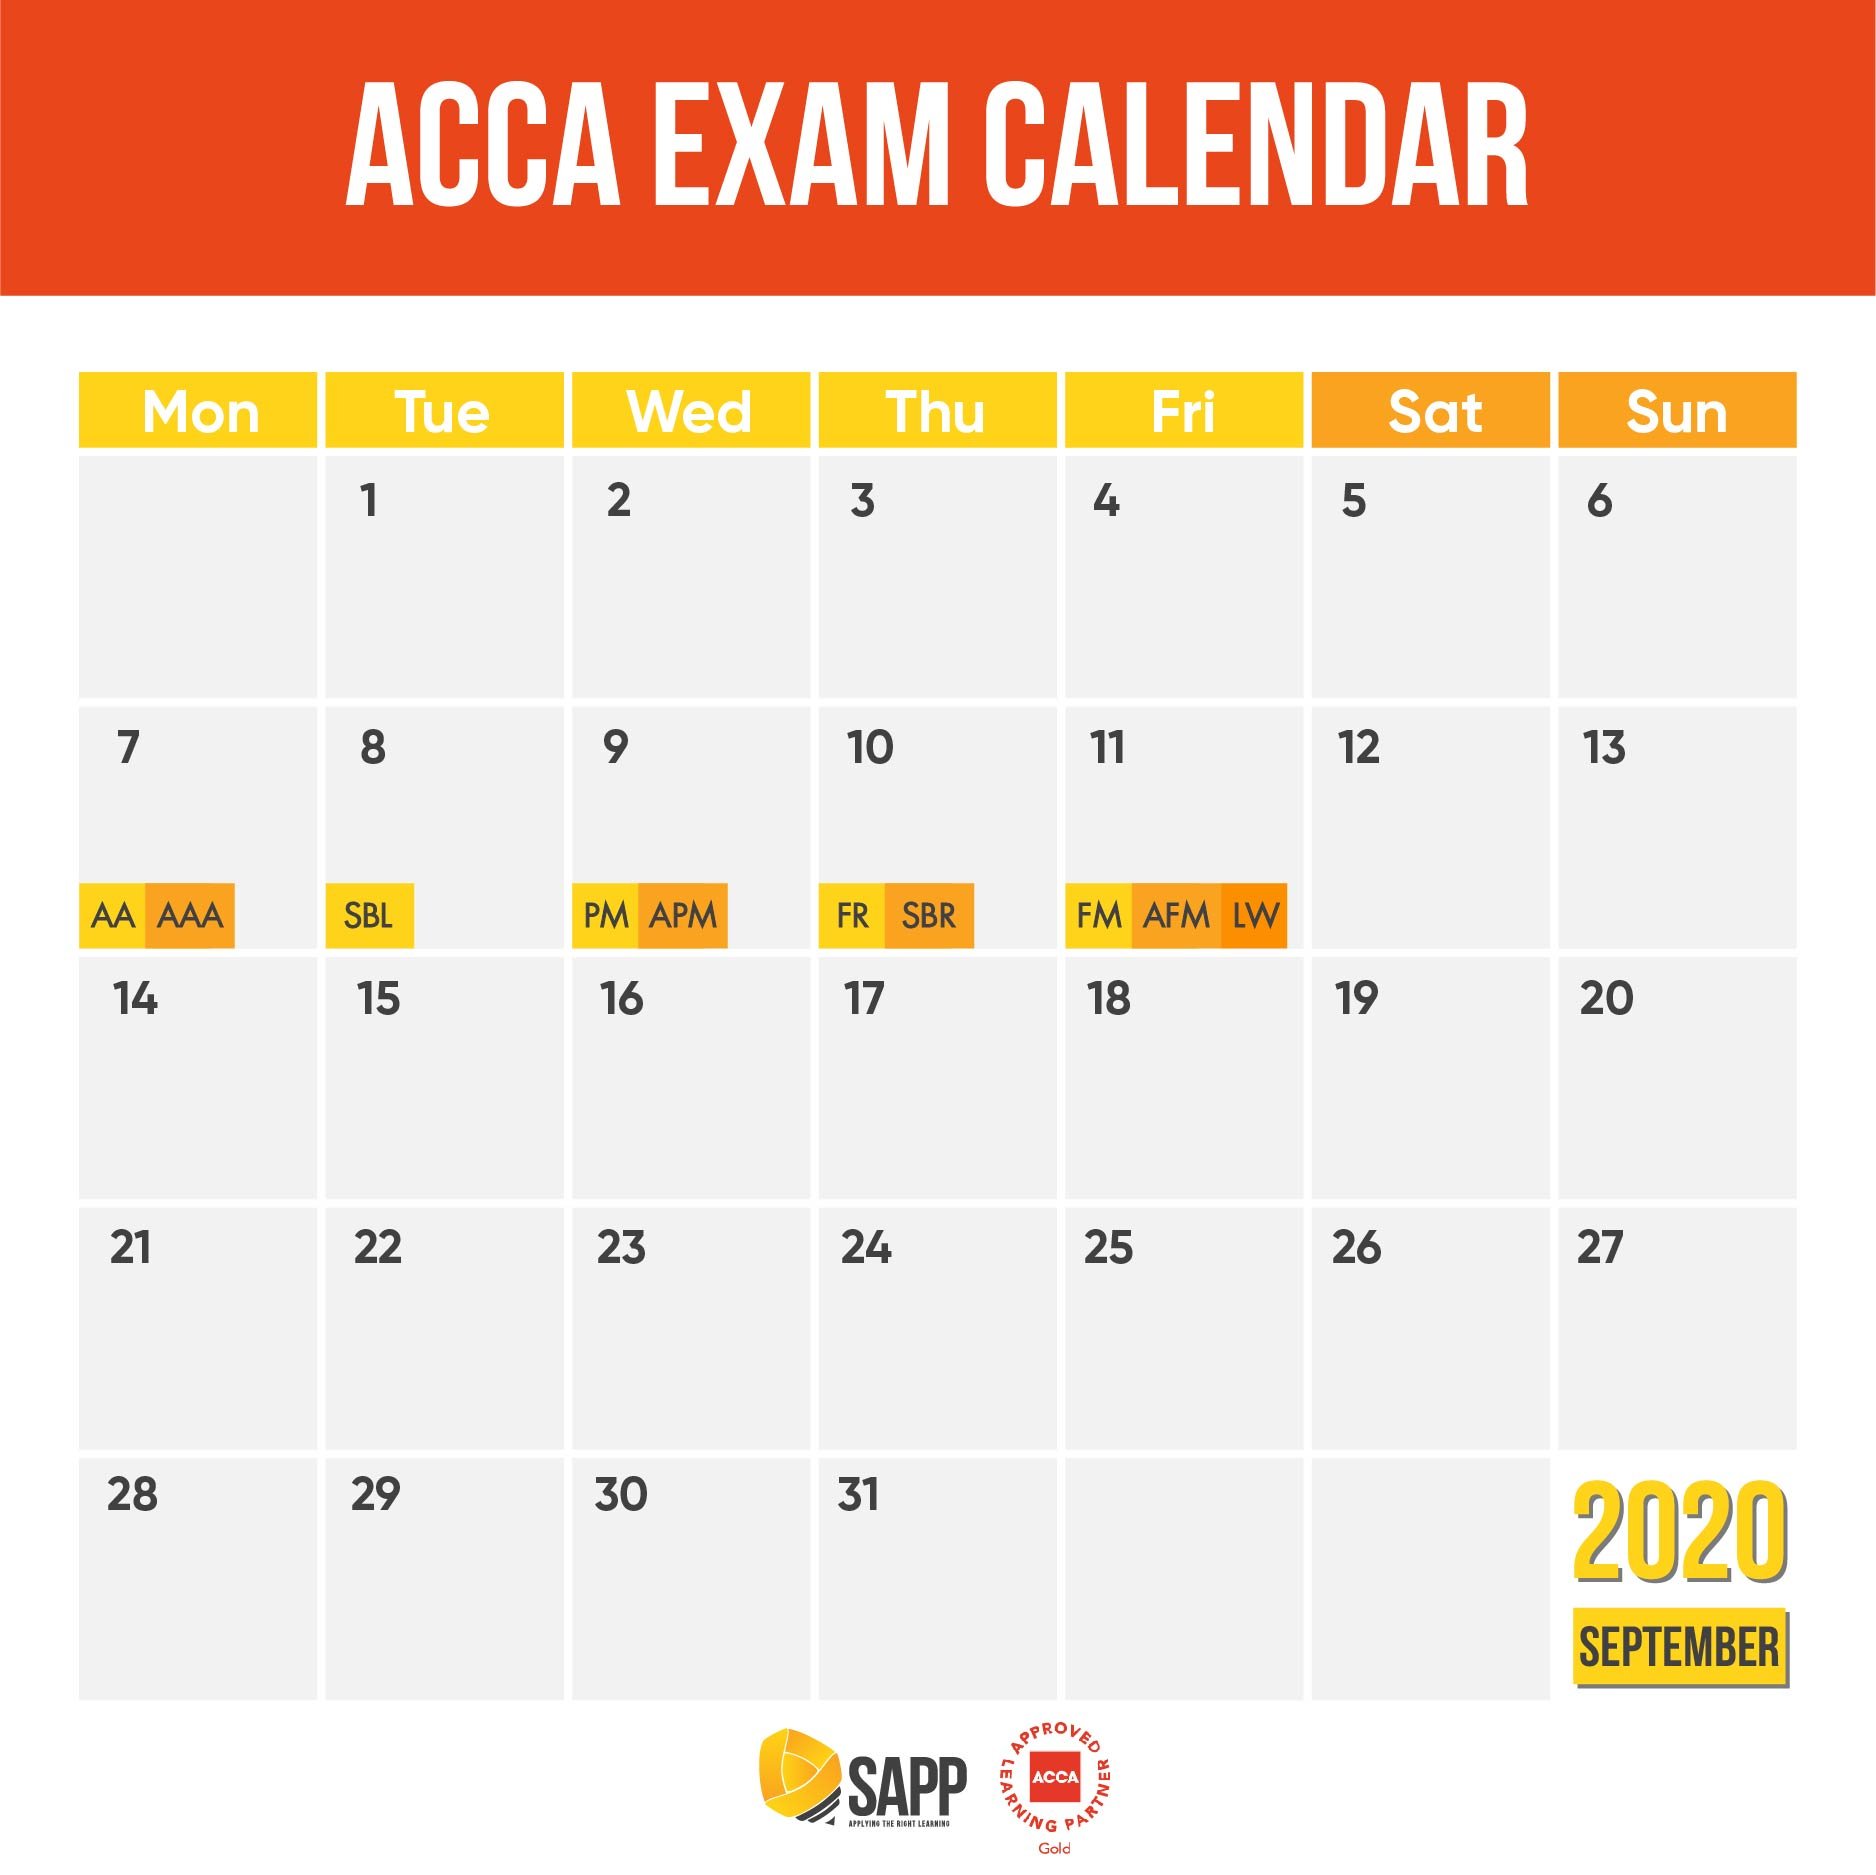 Lệ phí thi ACCA và Lịch thi ACCA tháng 9 năm 2020 [Cập nhật nhất]